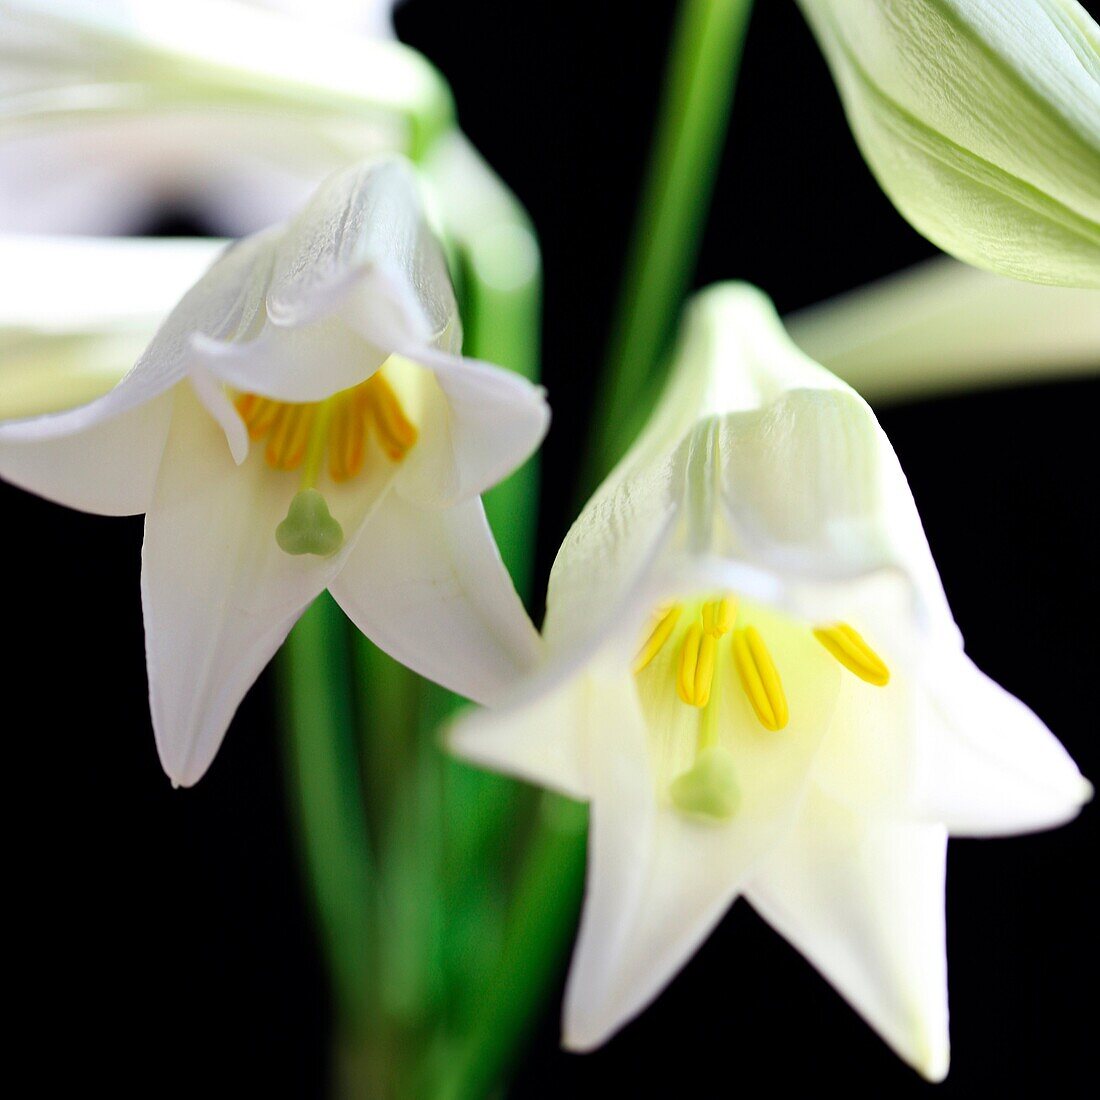 Die wunderbare Longiflorum-Lilie als Symbol für Liebe und Erinnerung - Kunstfotografie